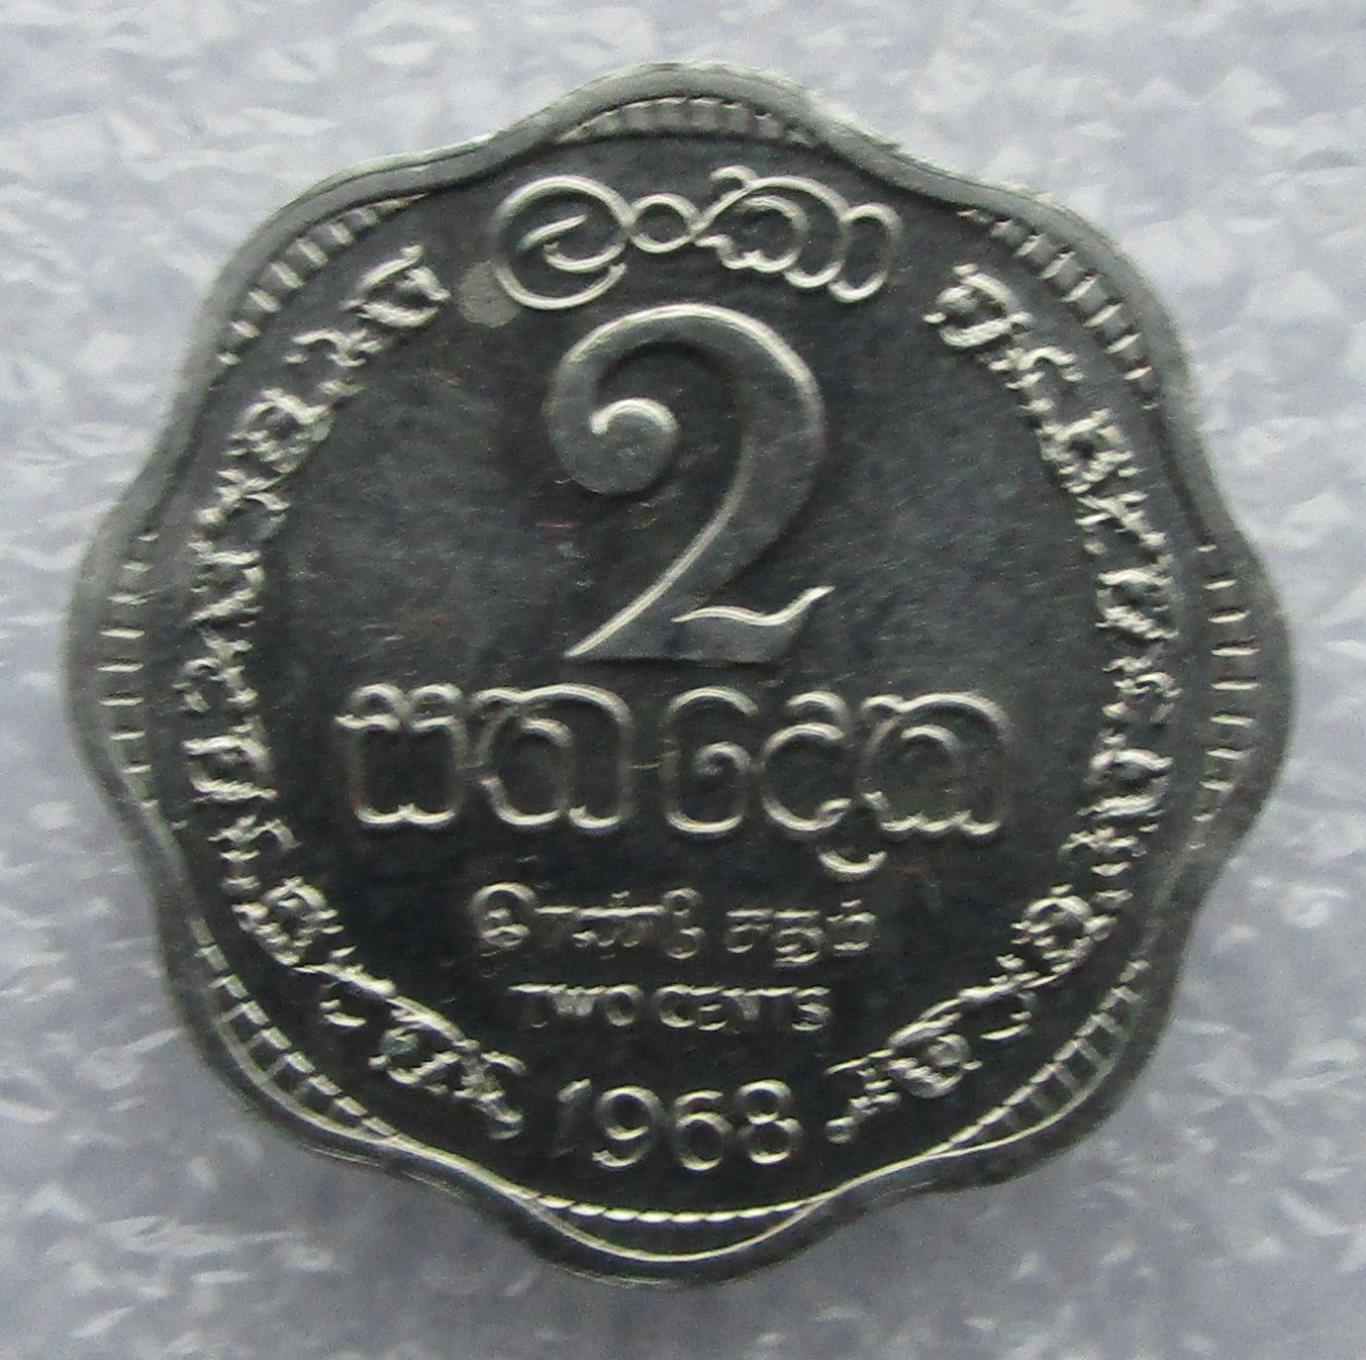 Цейлон, 2 цента - 1968. UNC. Штемпельный блеск.